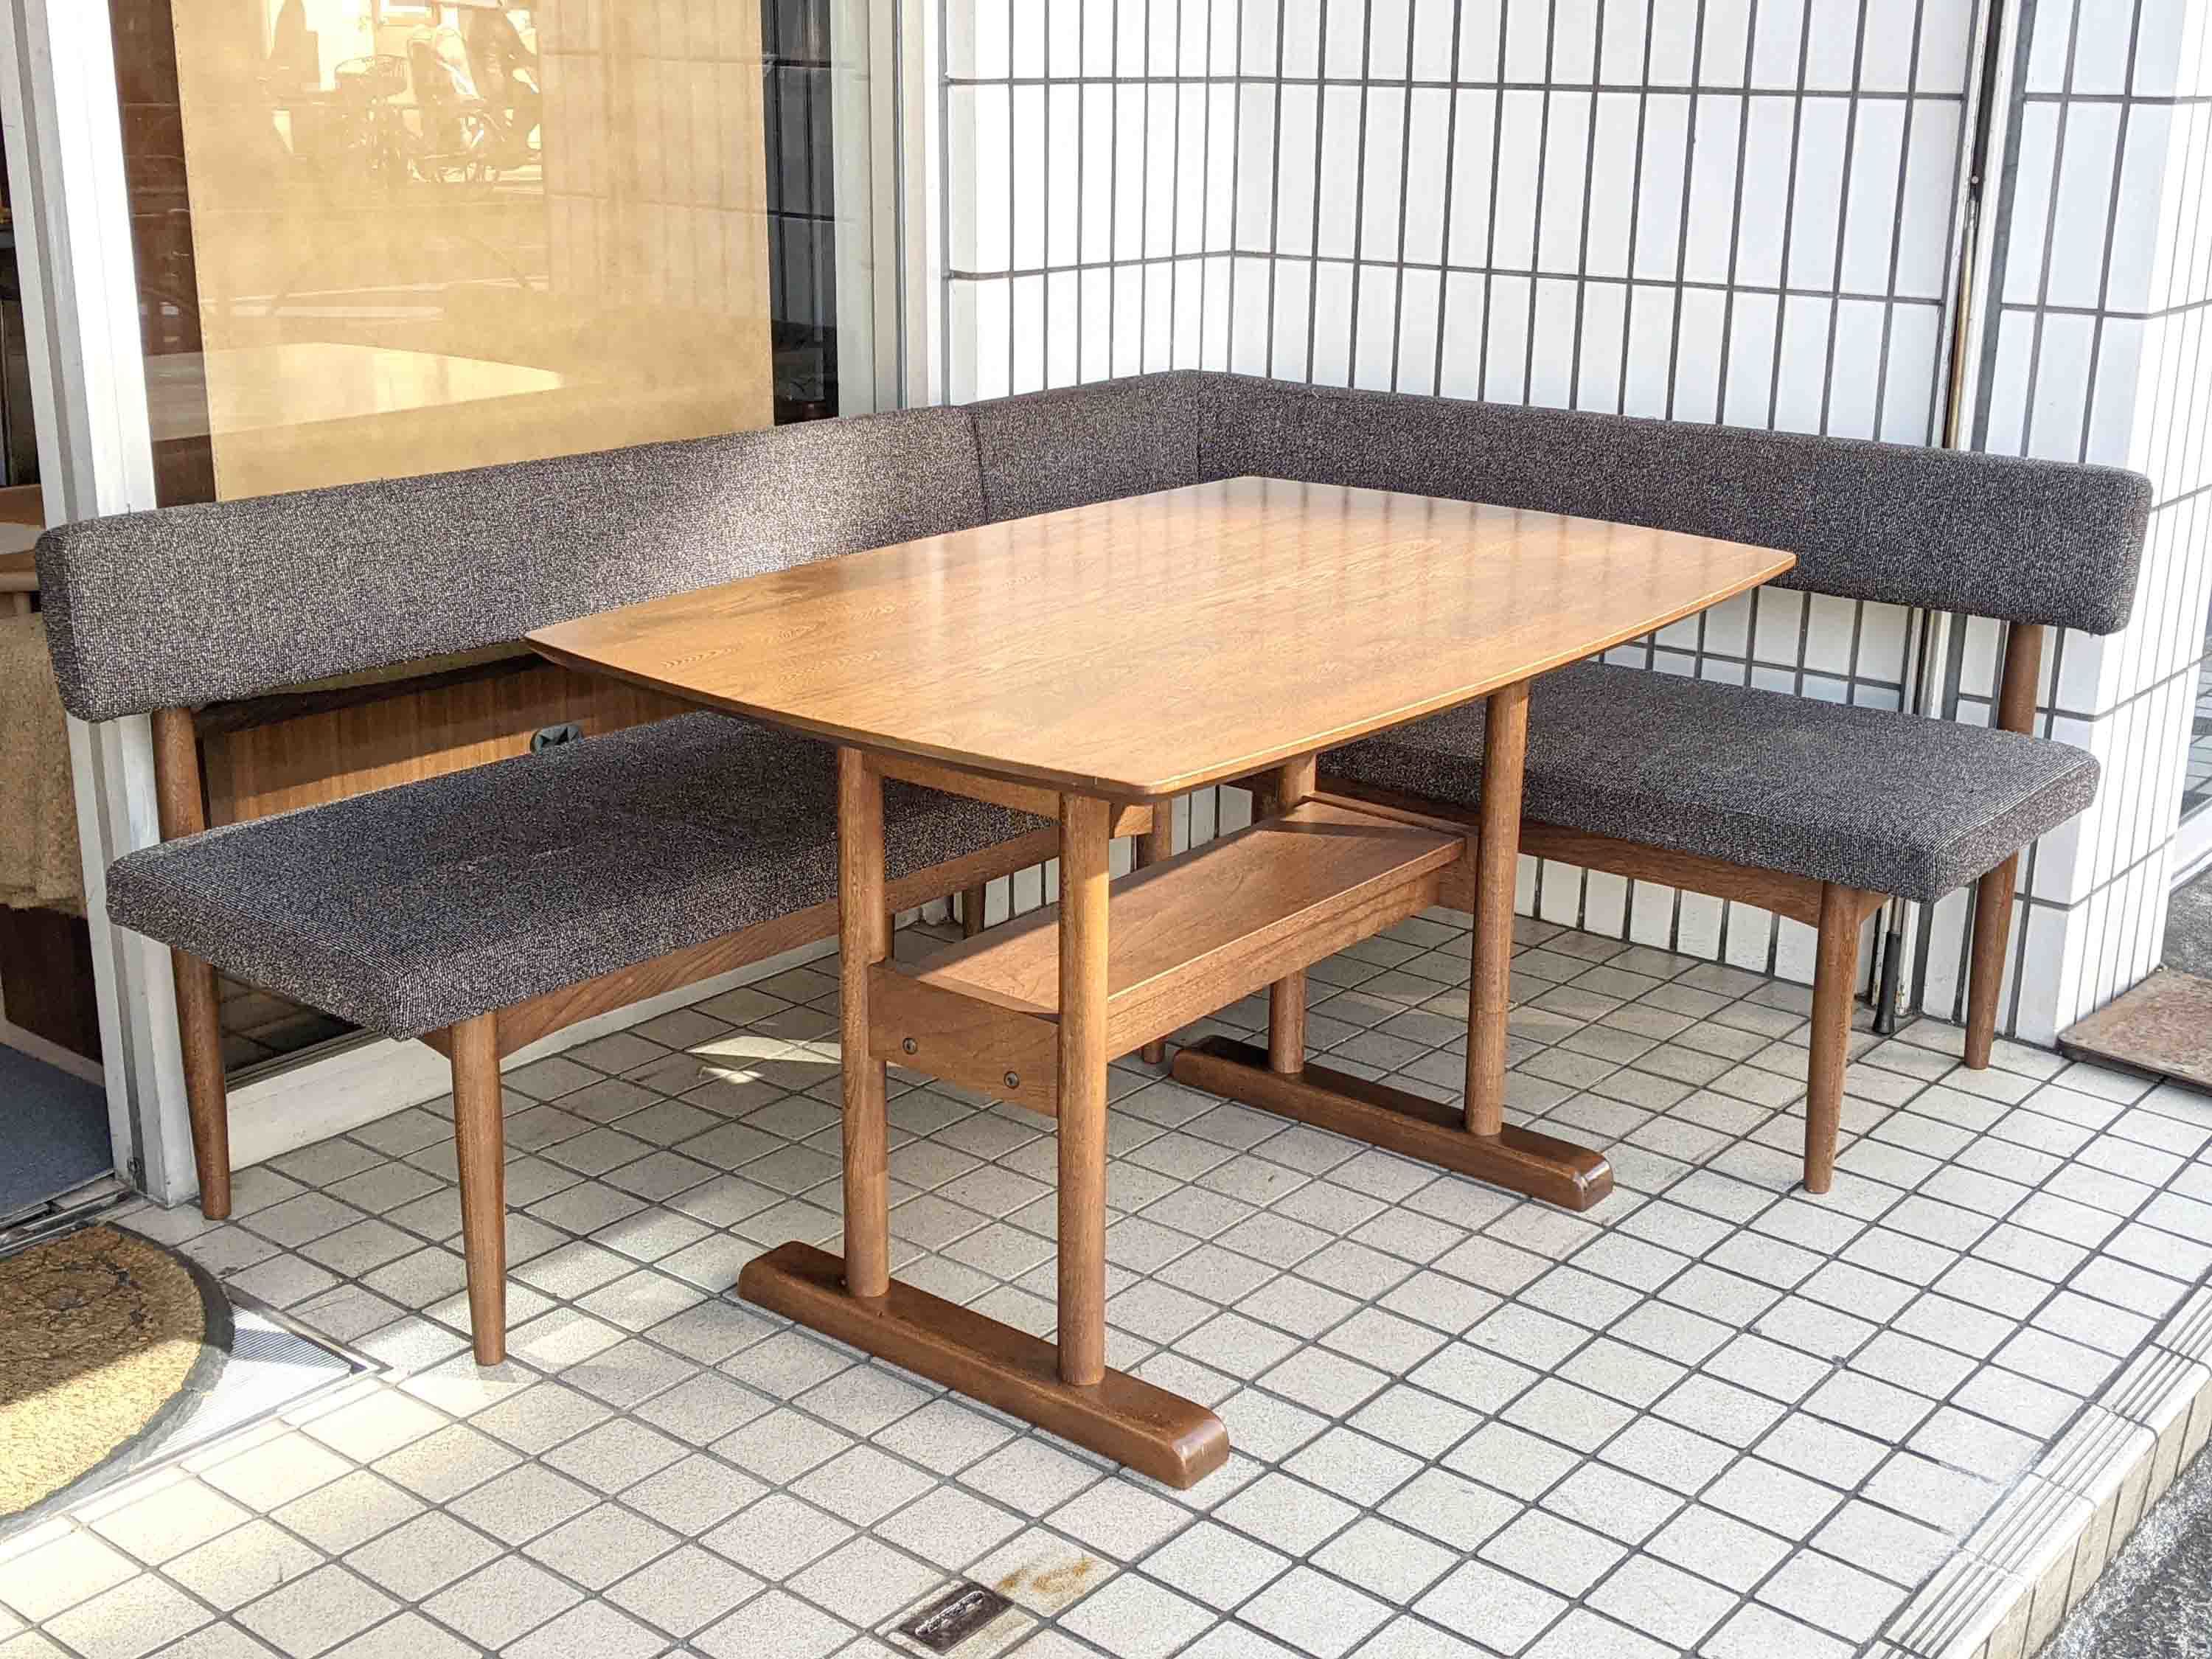 unico/ウニコ】SUK/スーク ベンチ&ダイニングテーブルセット が入荷